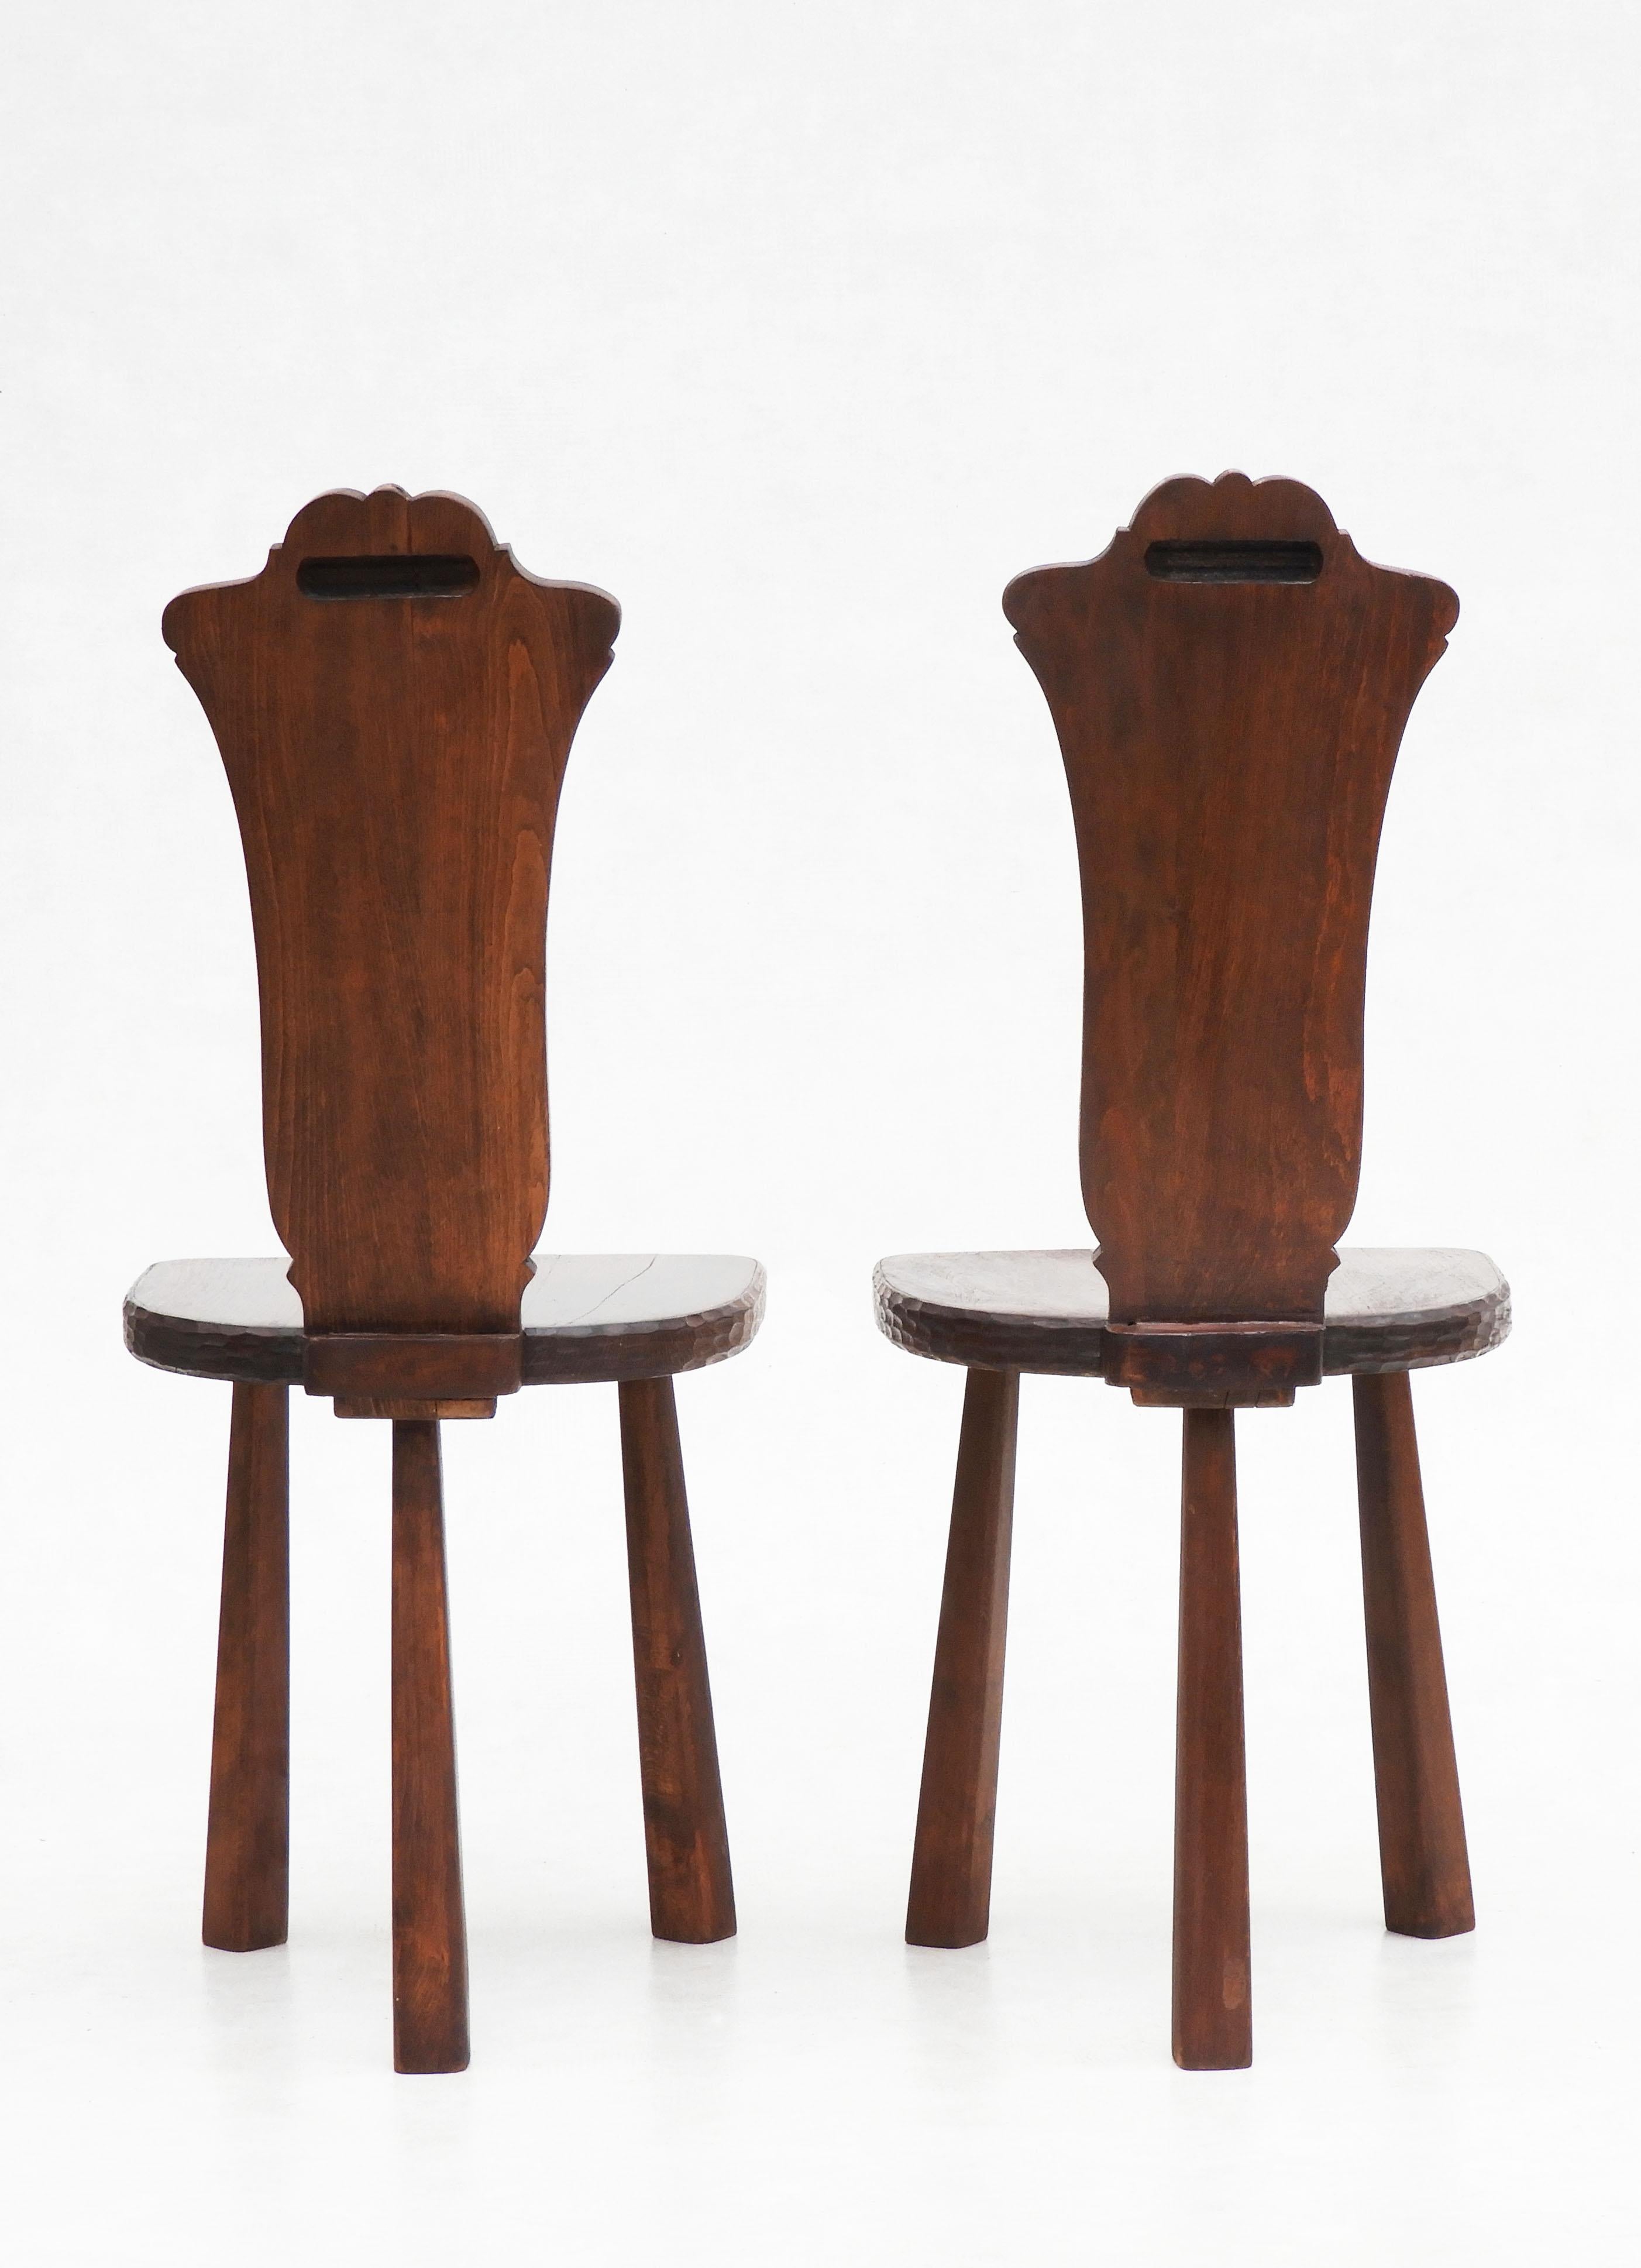 Pair of Basque Tripod Chairs 1950s European Folk Art For Sale 2